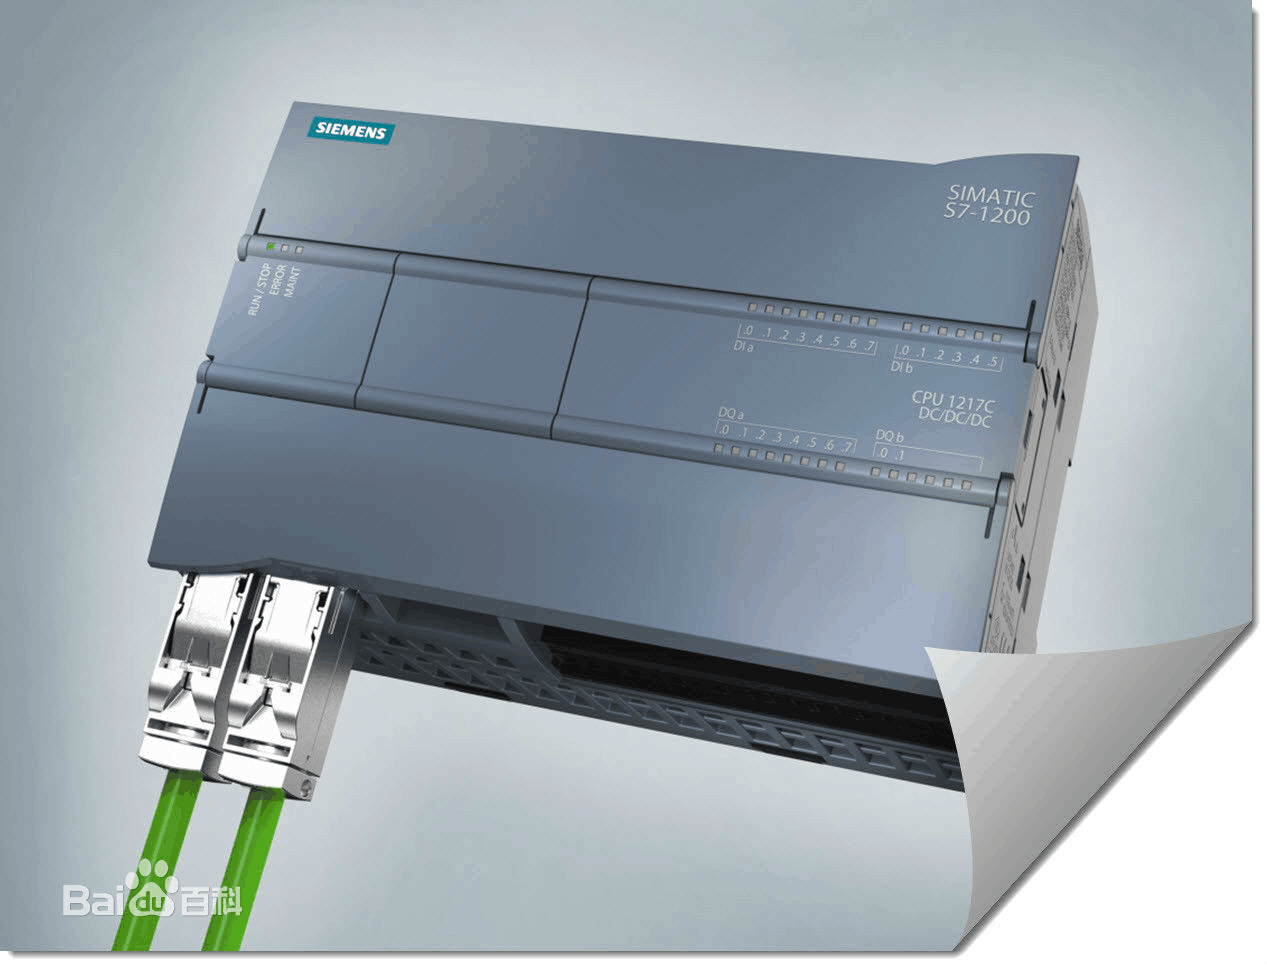 中继器 6ES7 972-0AA02-OXAO西门子产品销售